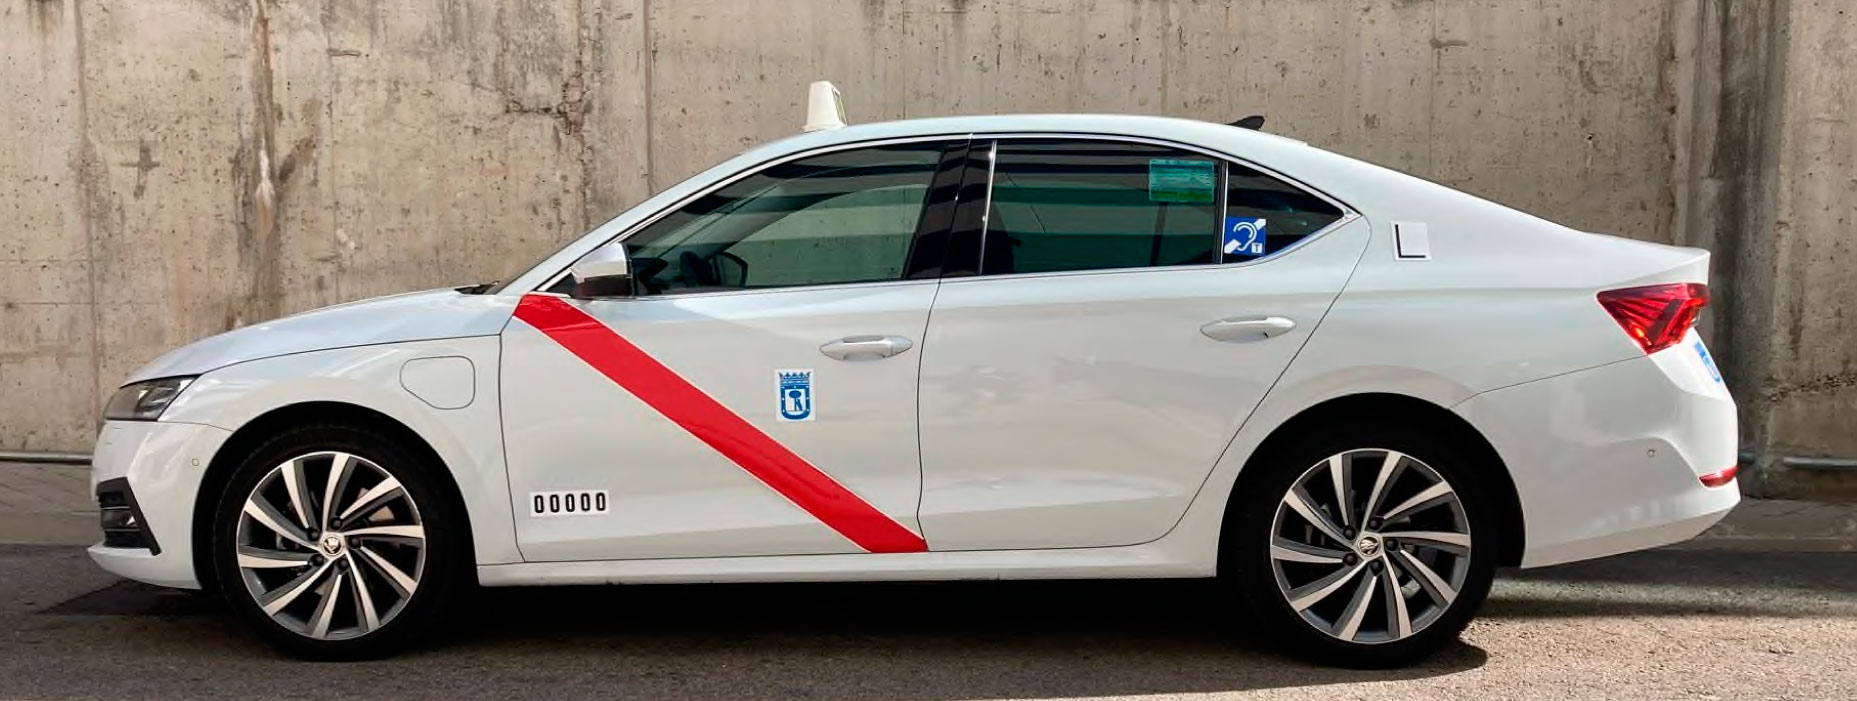 Autorizadas nuevas variantes del Škoda Octavia NX en Madrid